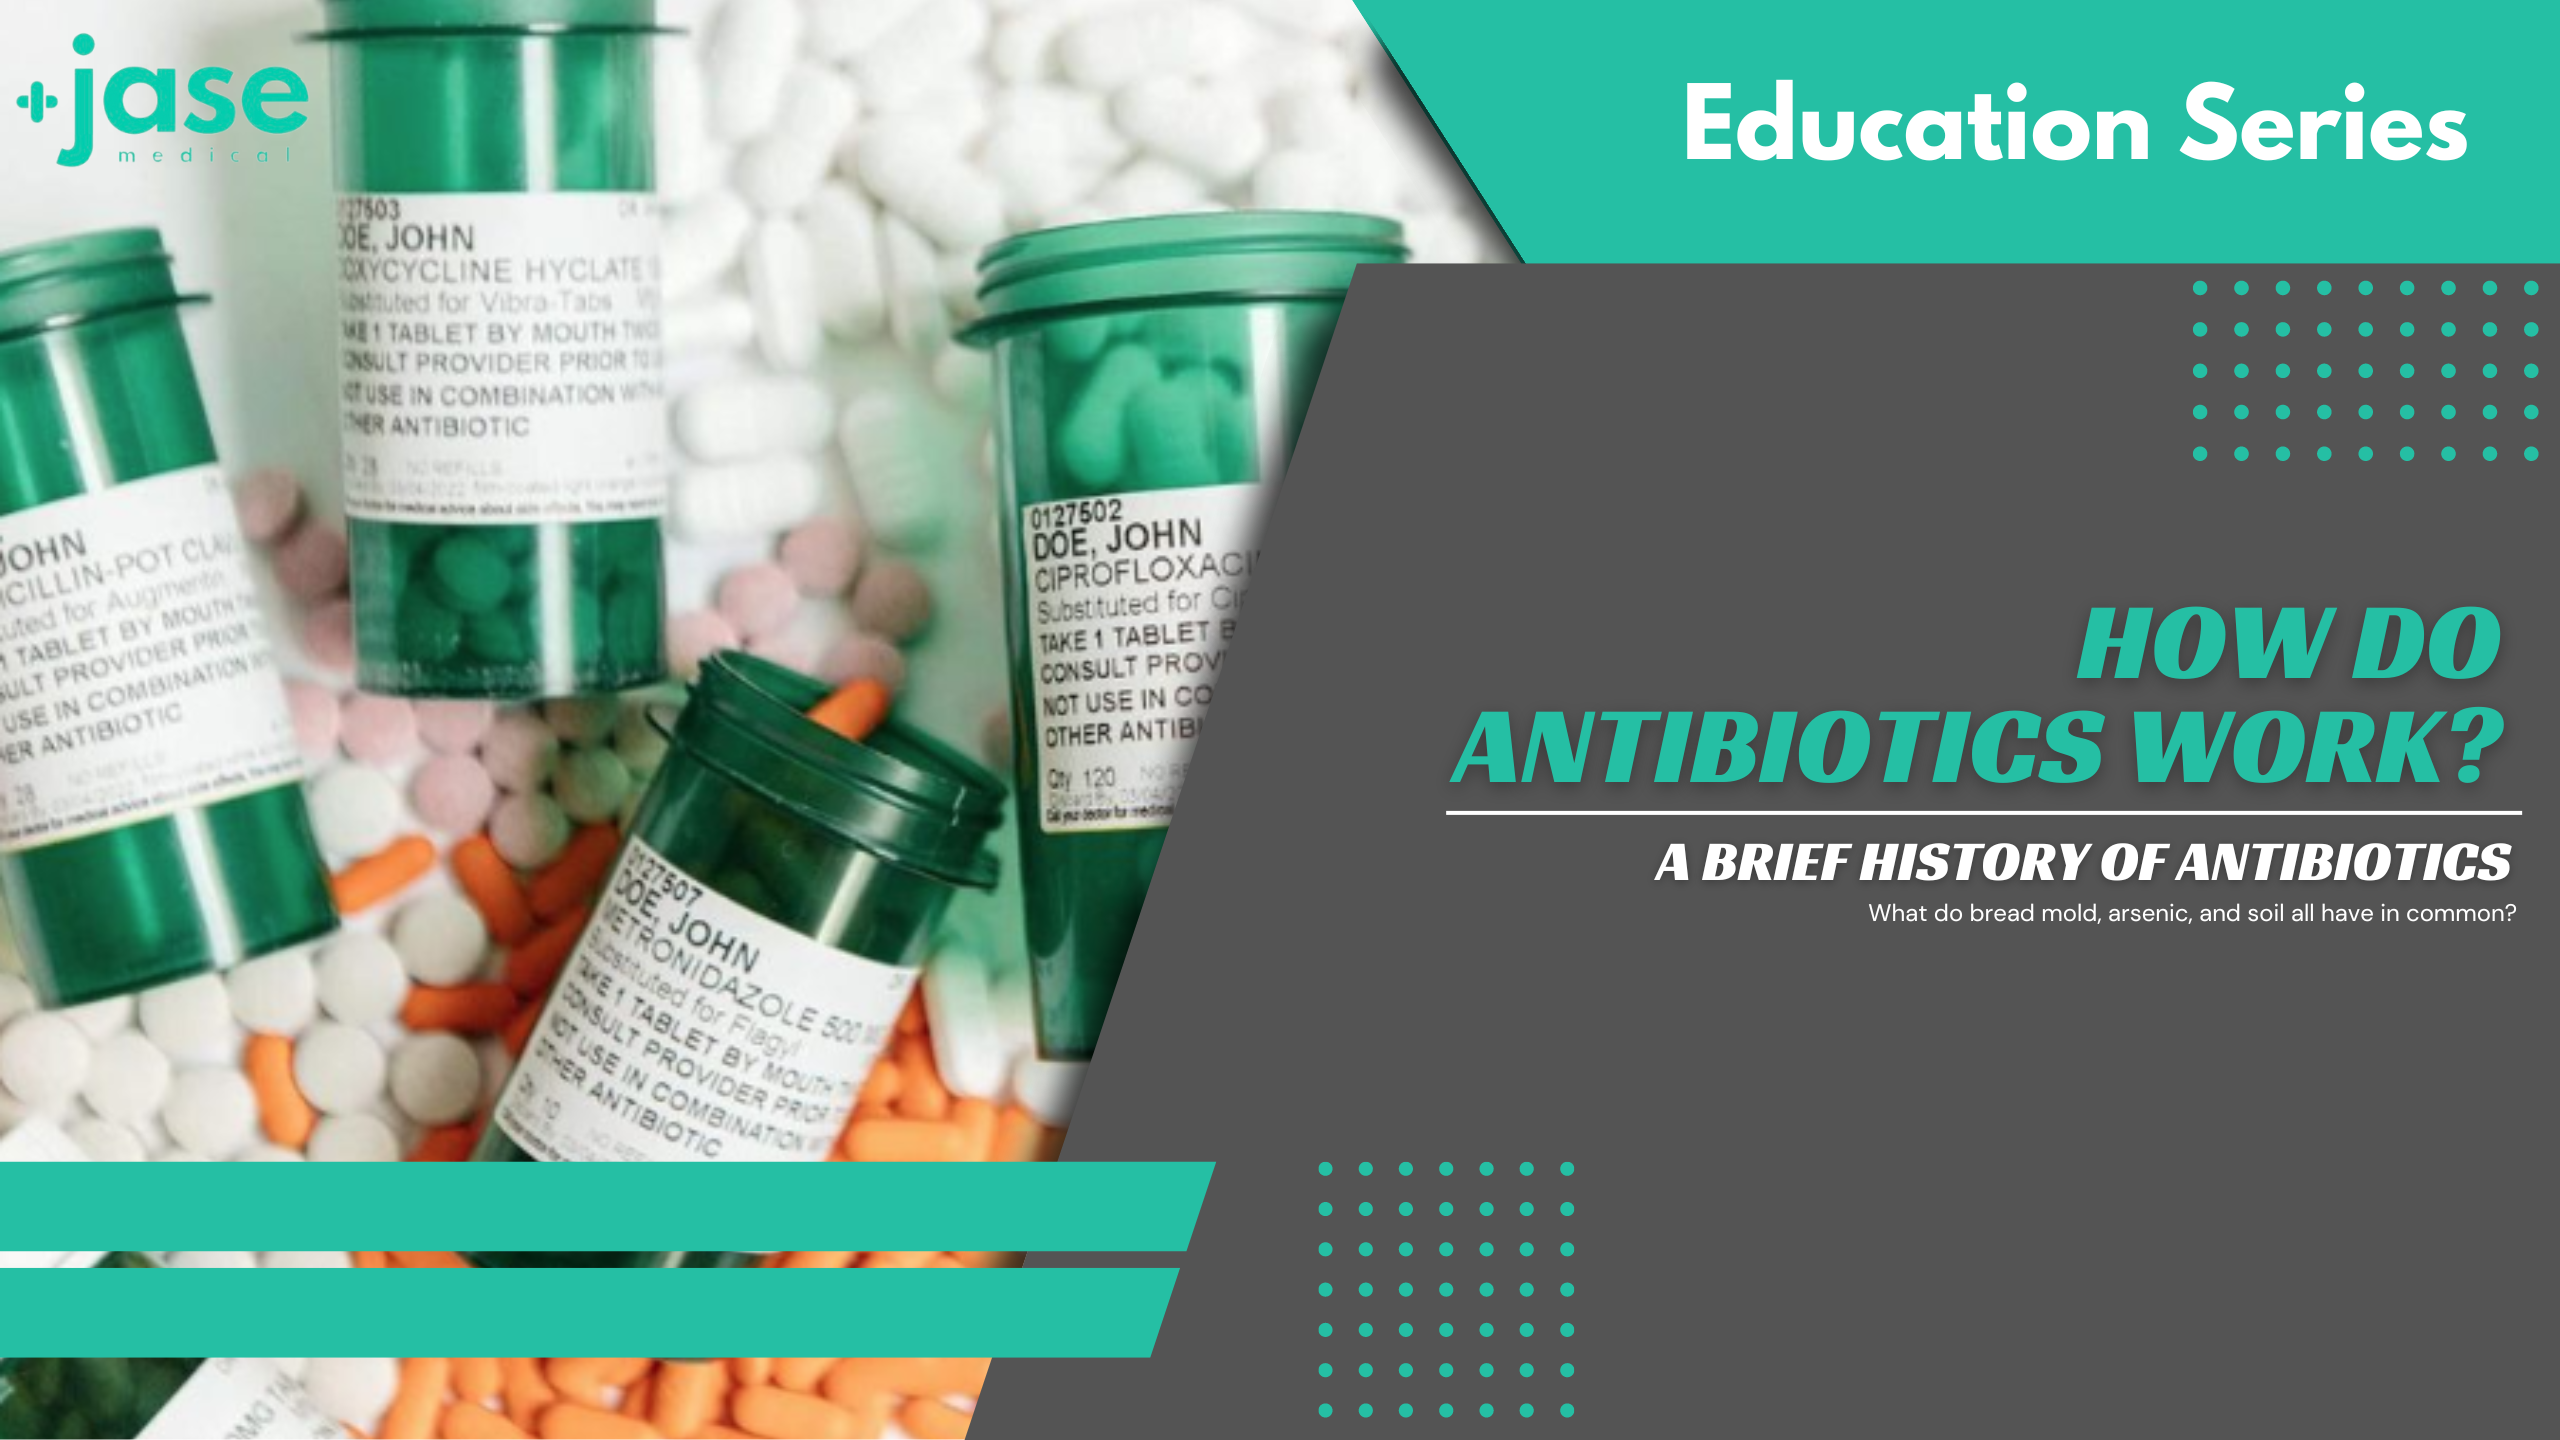 How do Antibiotics Work?